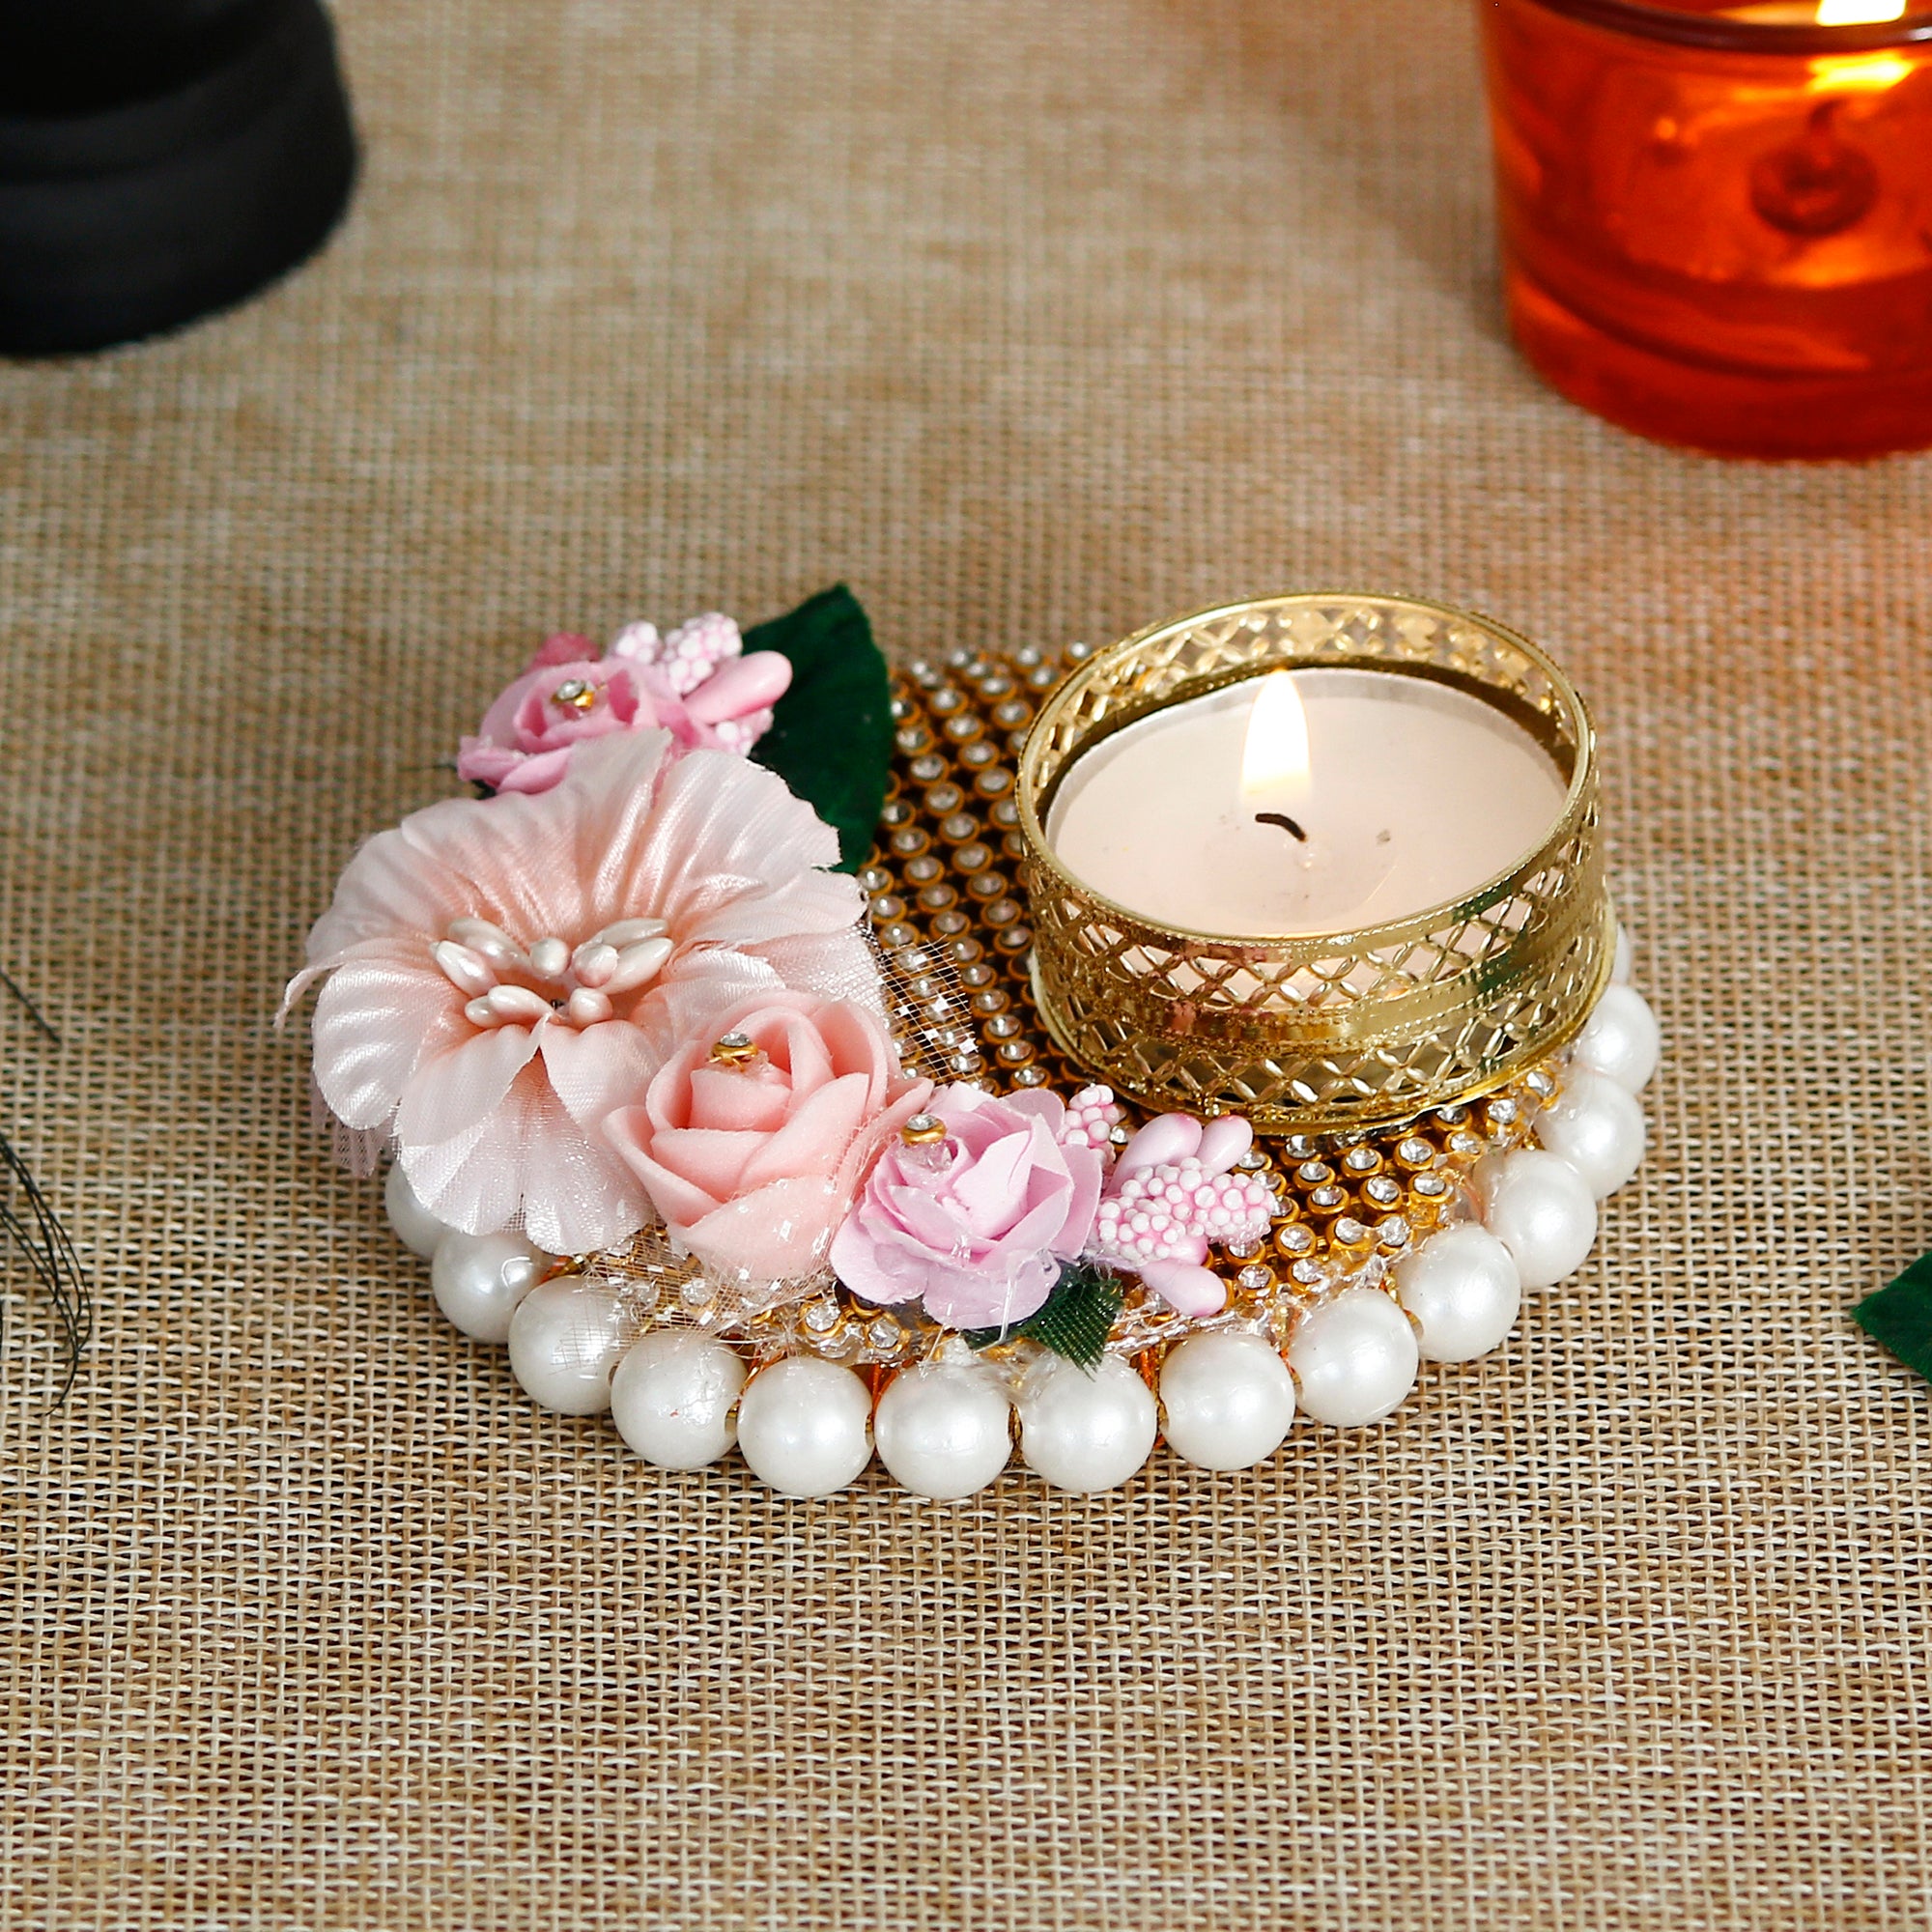 Decorative Handcrafted Pink Floral Tea Light Holder